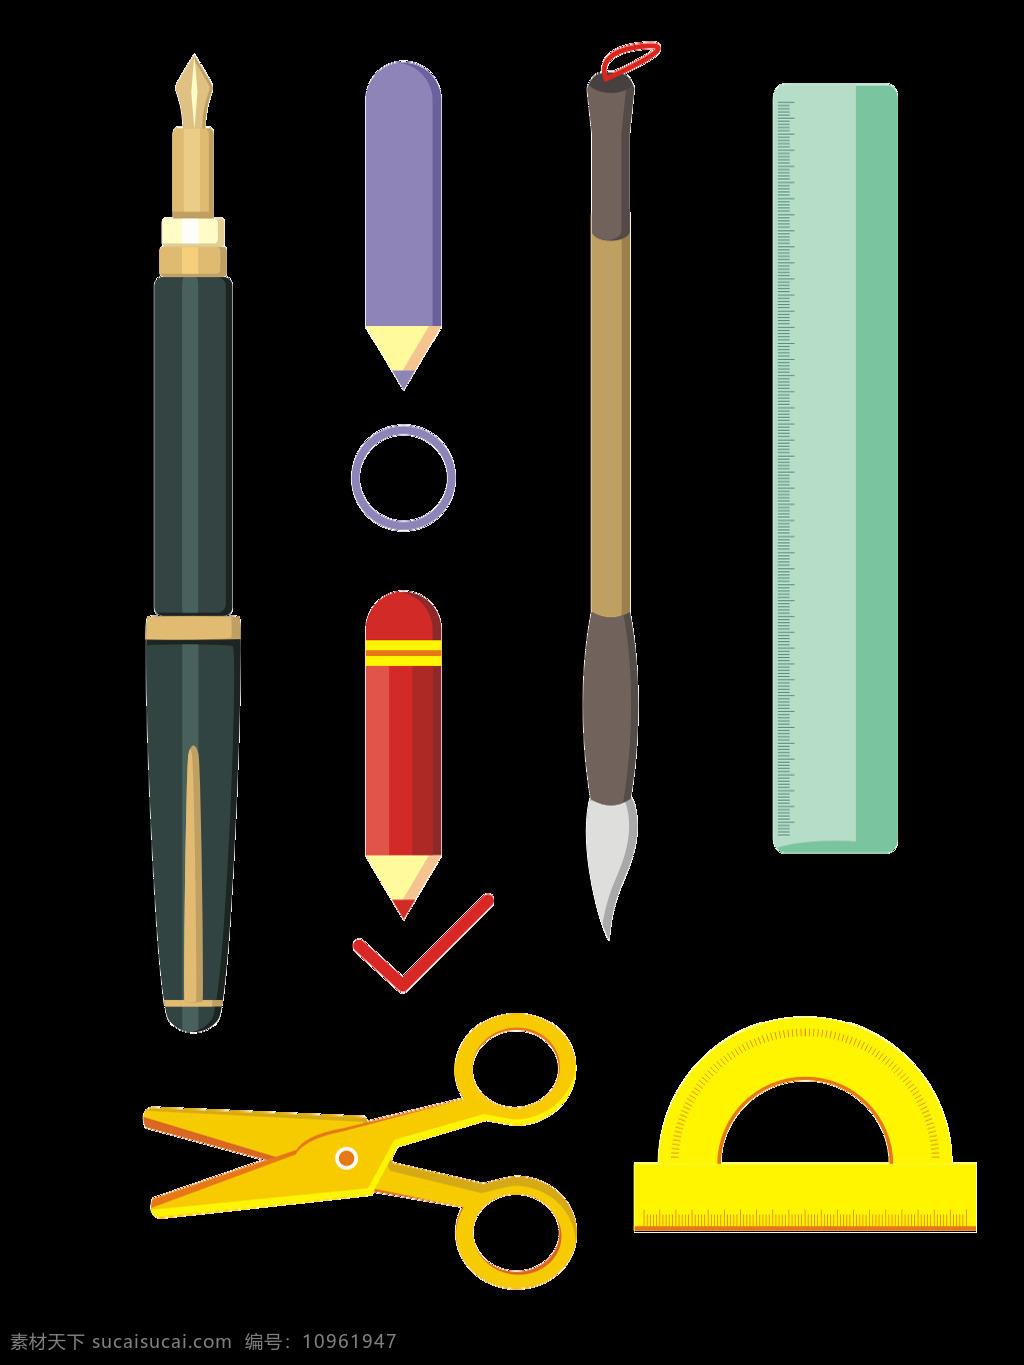 文具用品 学习 用具 元素 扁平化 铅笔 简约 毛笔 学习用具 钢笔 剪刀 尺子